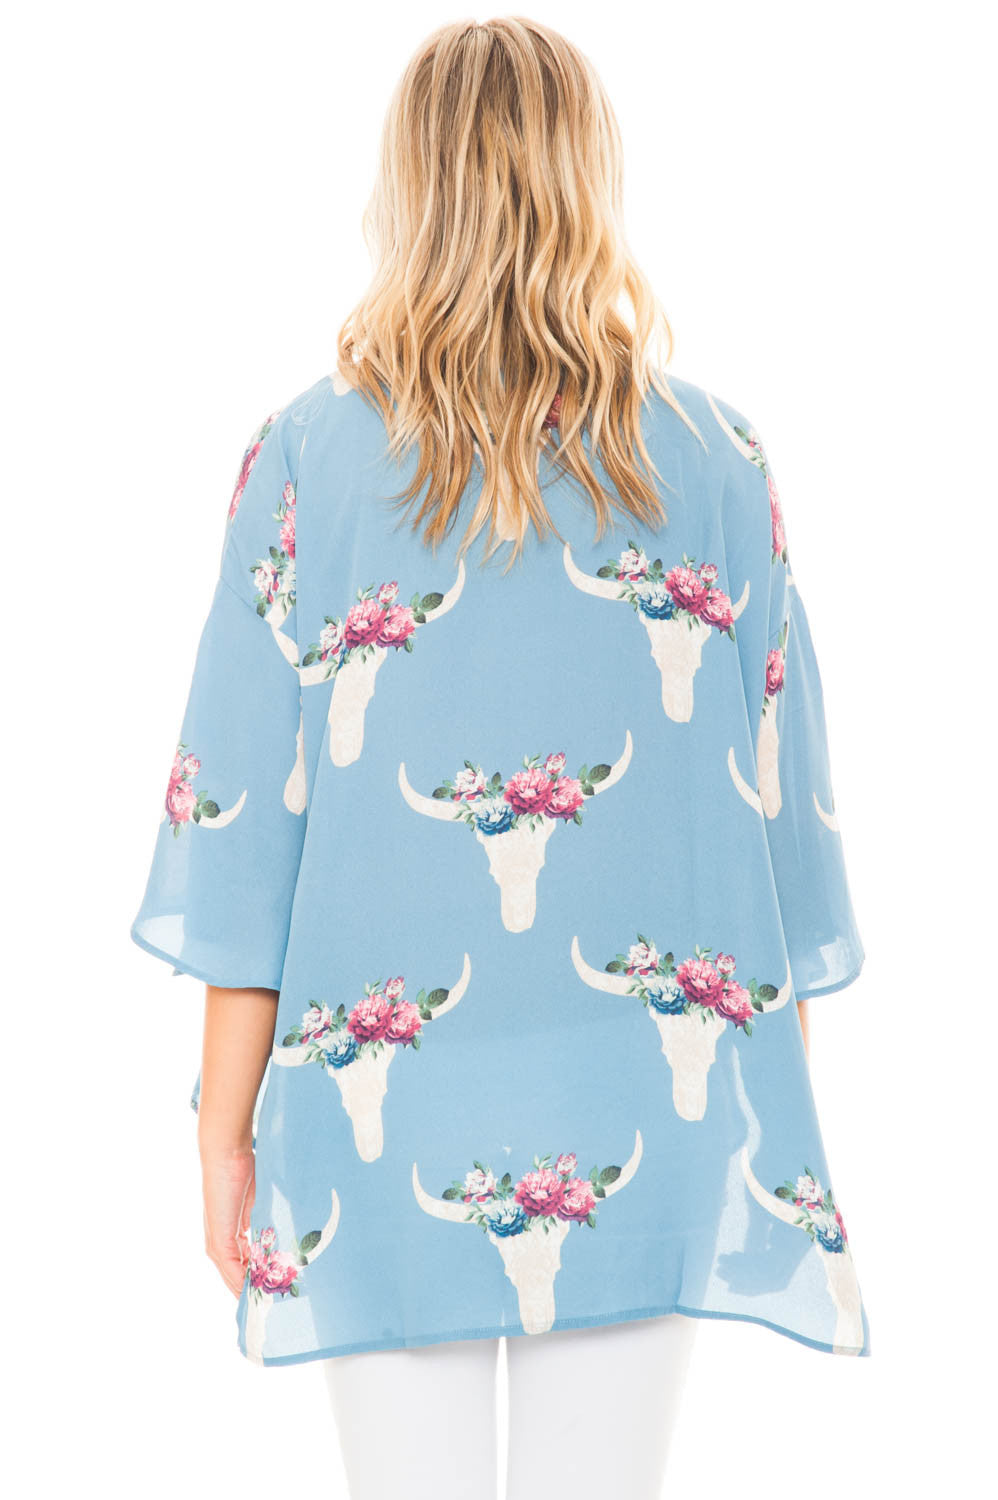 Kimono - Flowy Printed Kimono with a Flared Sleeve